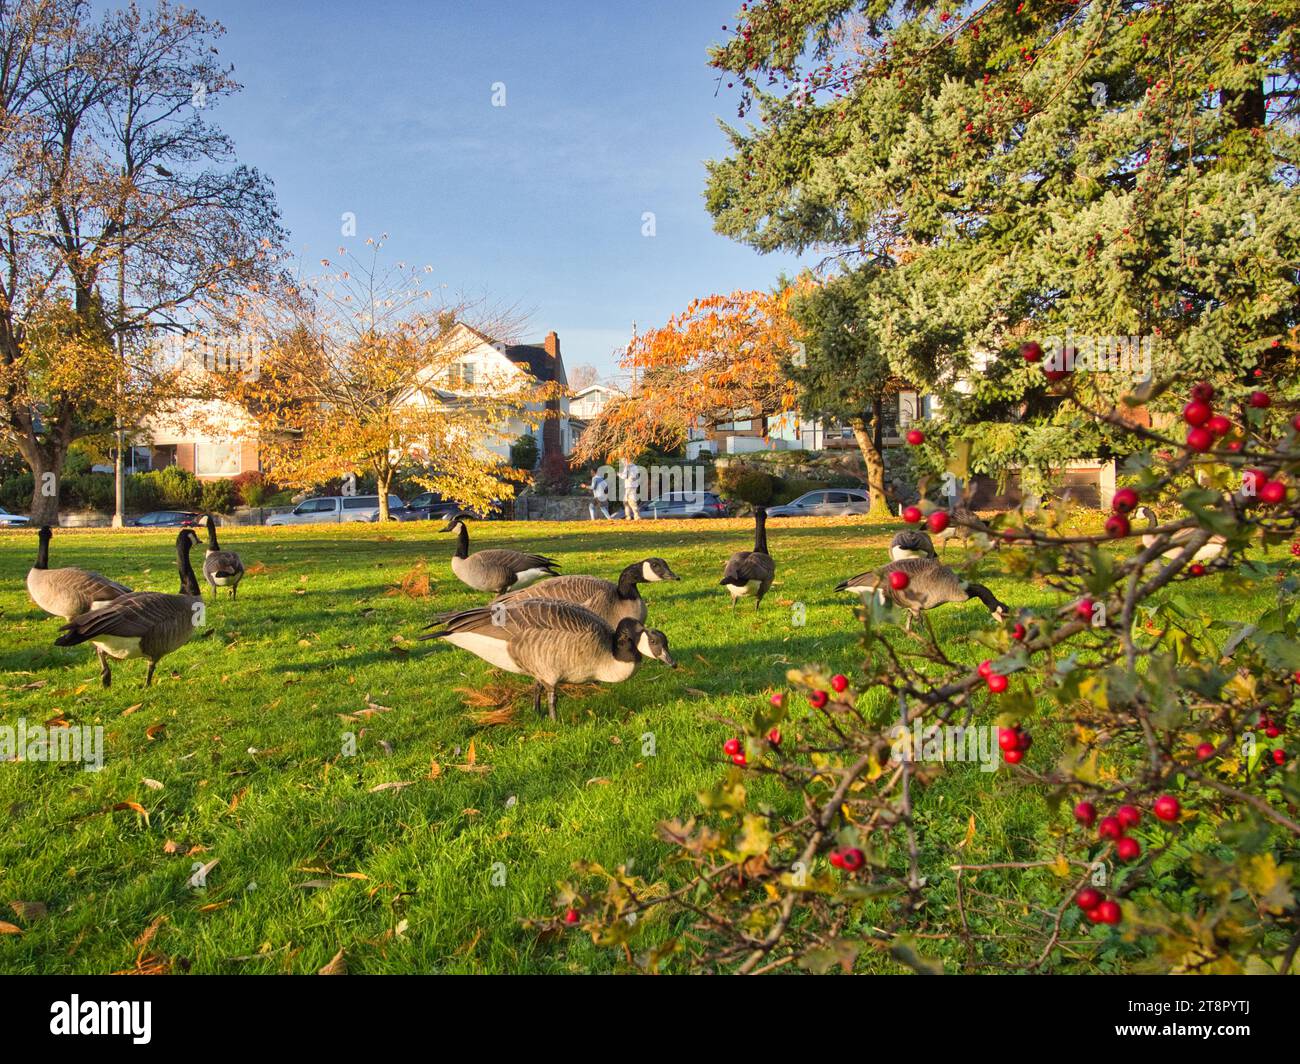 Un troupeau d'oies du Canada paissent sur l'herbe verte dans le parc municipal de Seattle à l'automne par une belle journée ensoleillée. Résidences de quartier en arrière-plan. Banque D'Images